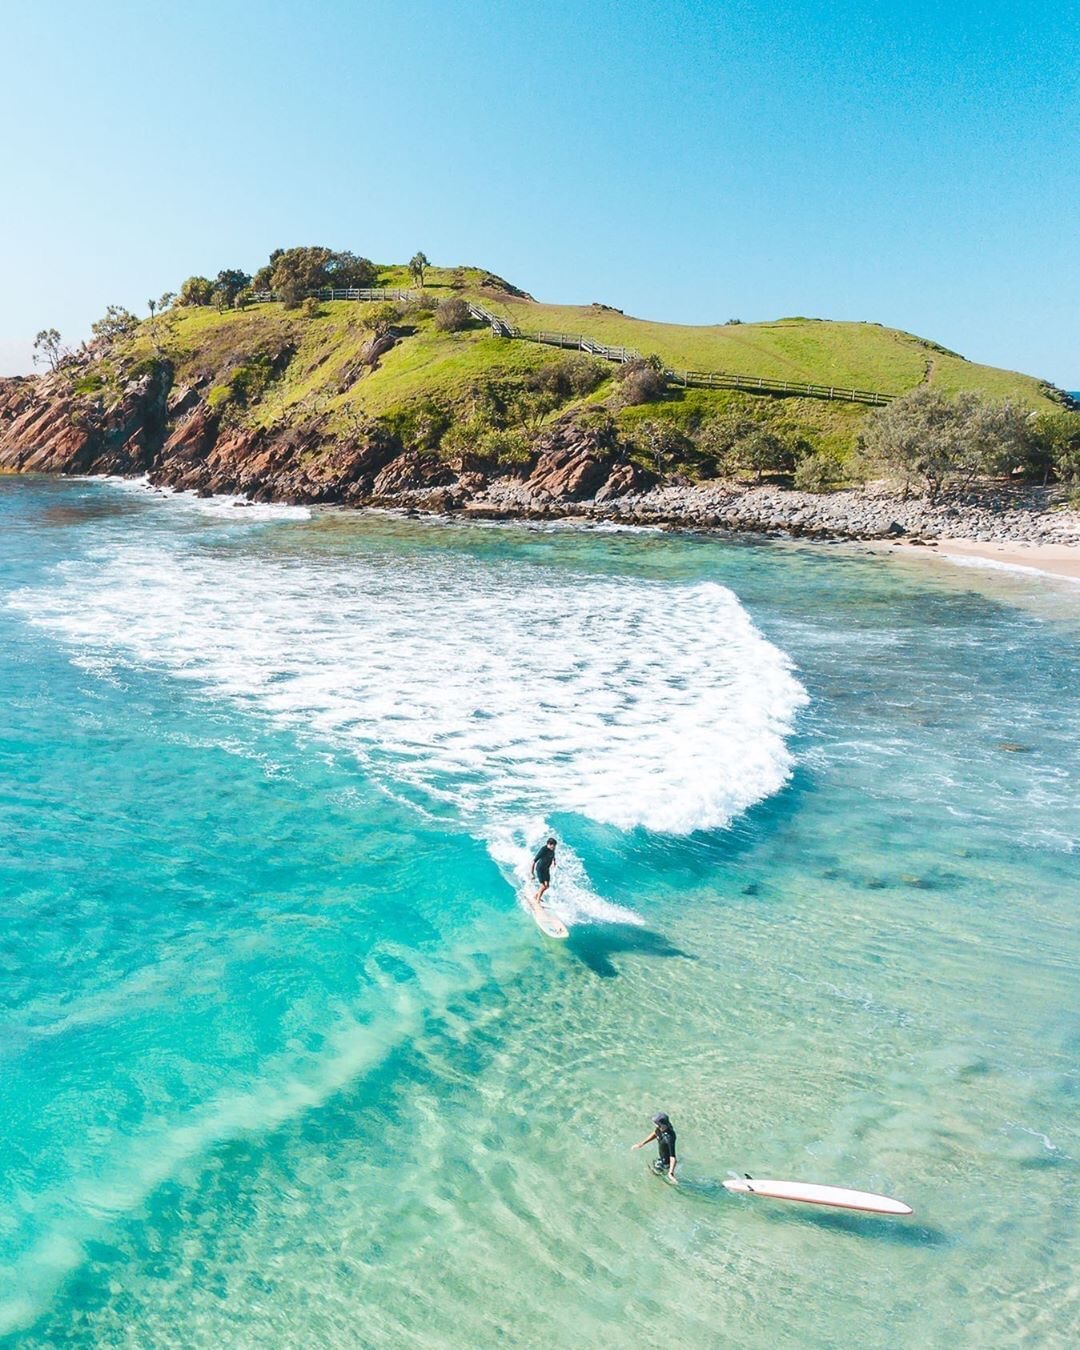 "2020年澳大利亚最佳海滩排行榜"出炉,赶紧收藏一下吧